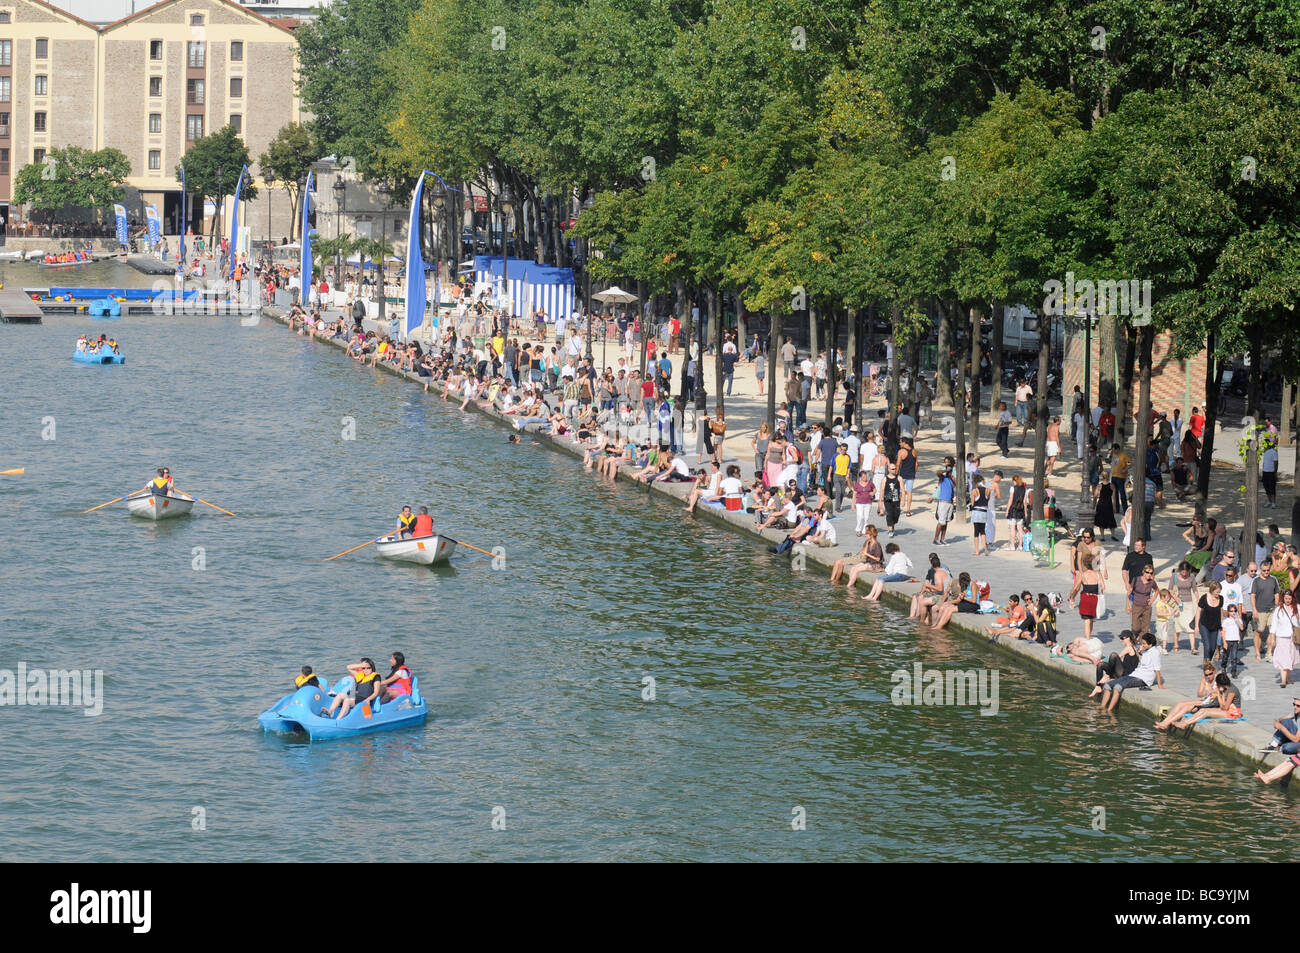 Les parisiens bénéficiant d'une chaude journée d'été près du bassin de la Villette dans le nord de Paris, France Banque D'Images